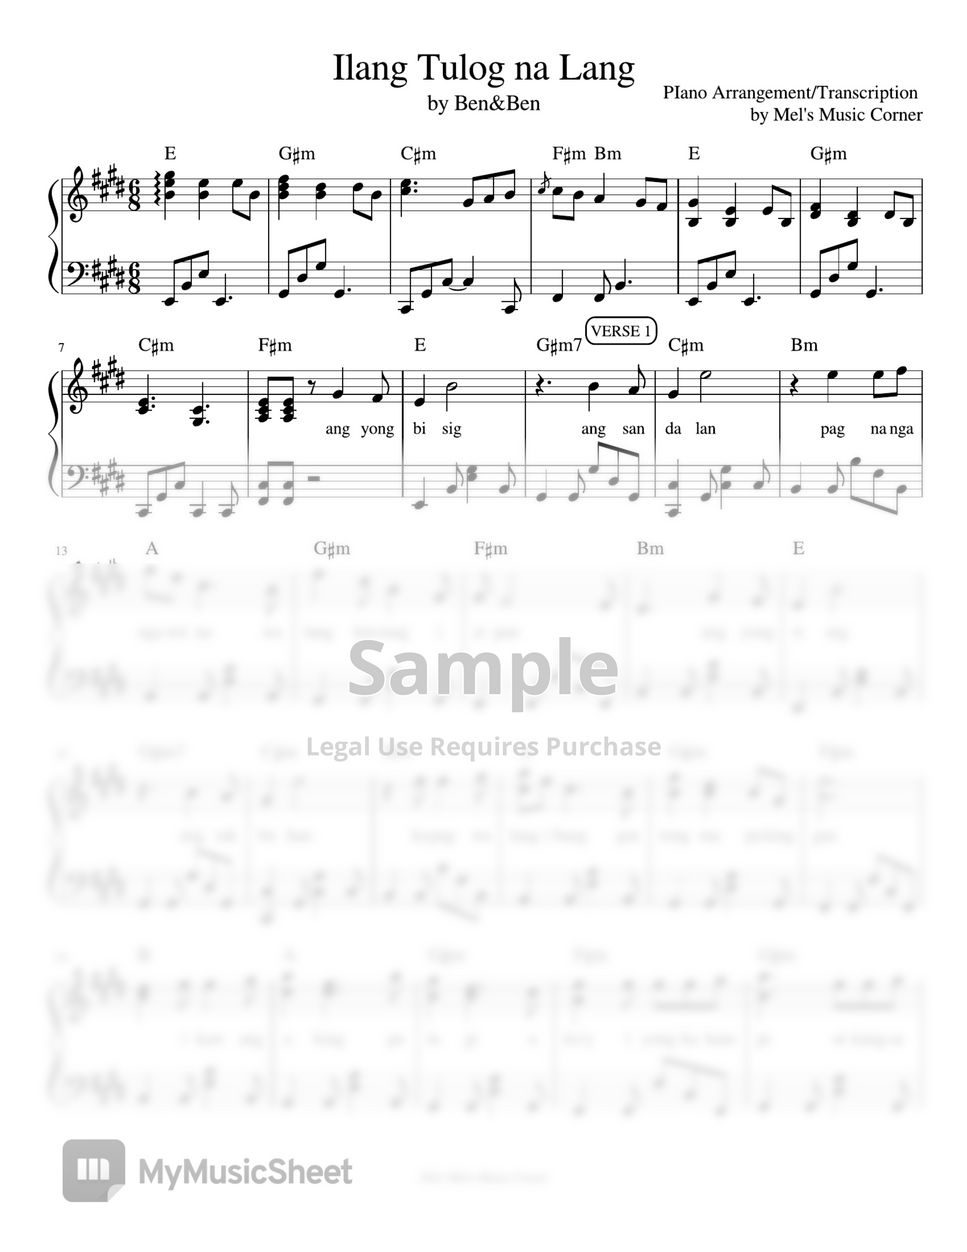 Ben&Ben - Ilang Tulog Na Lang (piano sheet music) by Mel's Music Corner